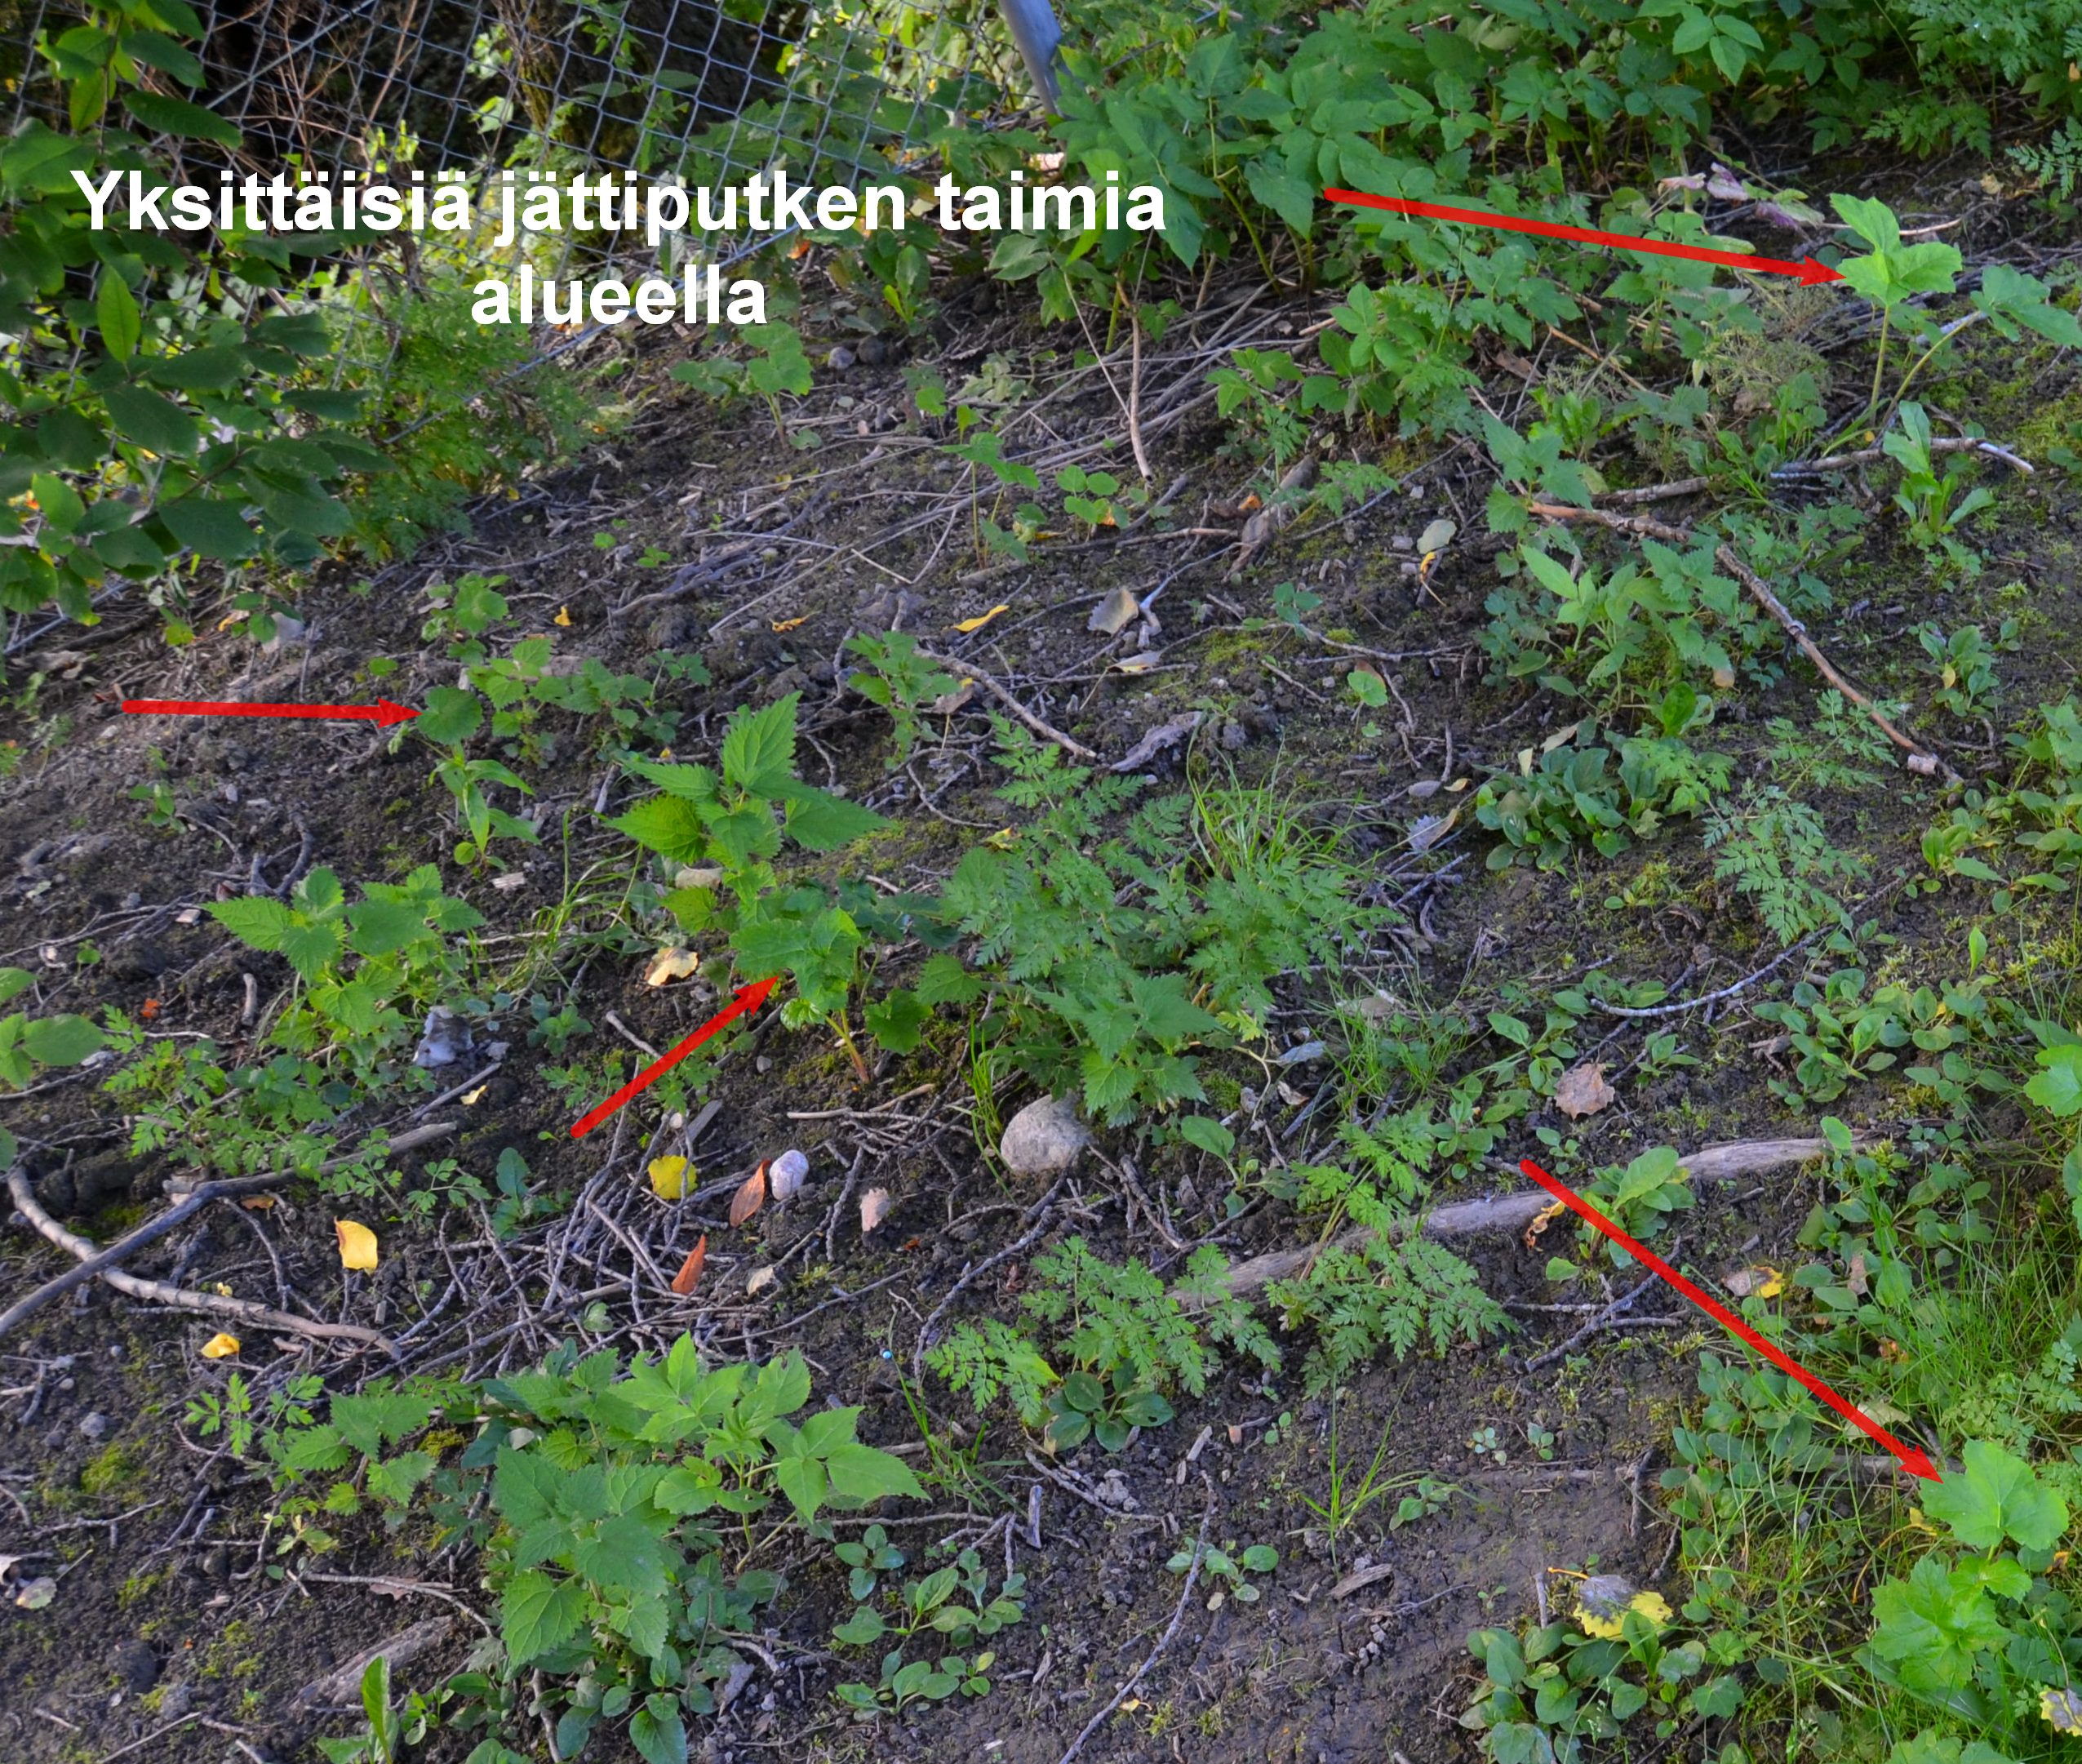 Yksittaisia_jattiputken_taimia_pyoraharalla_kasitellylla_alueella_Luontoturva.fi.JPG